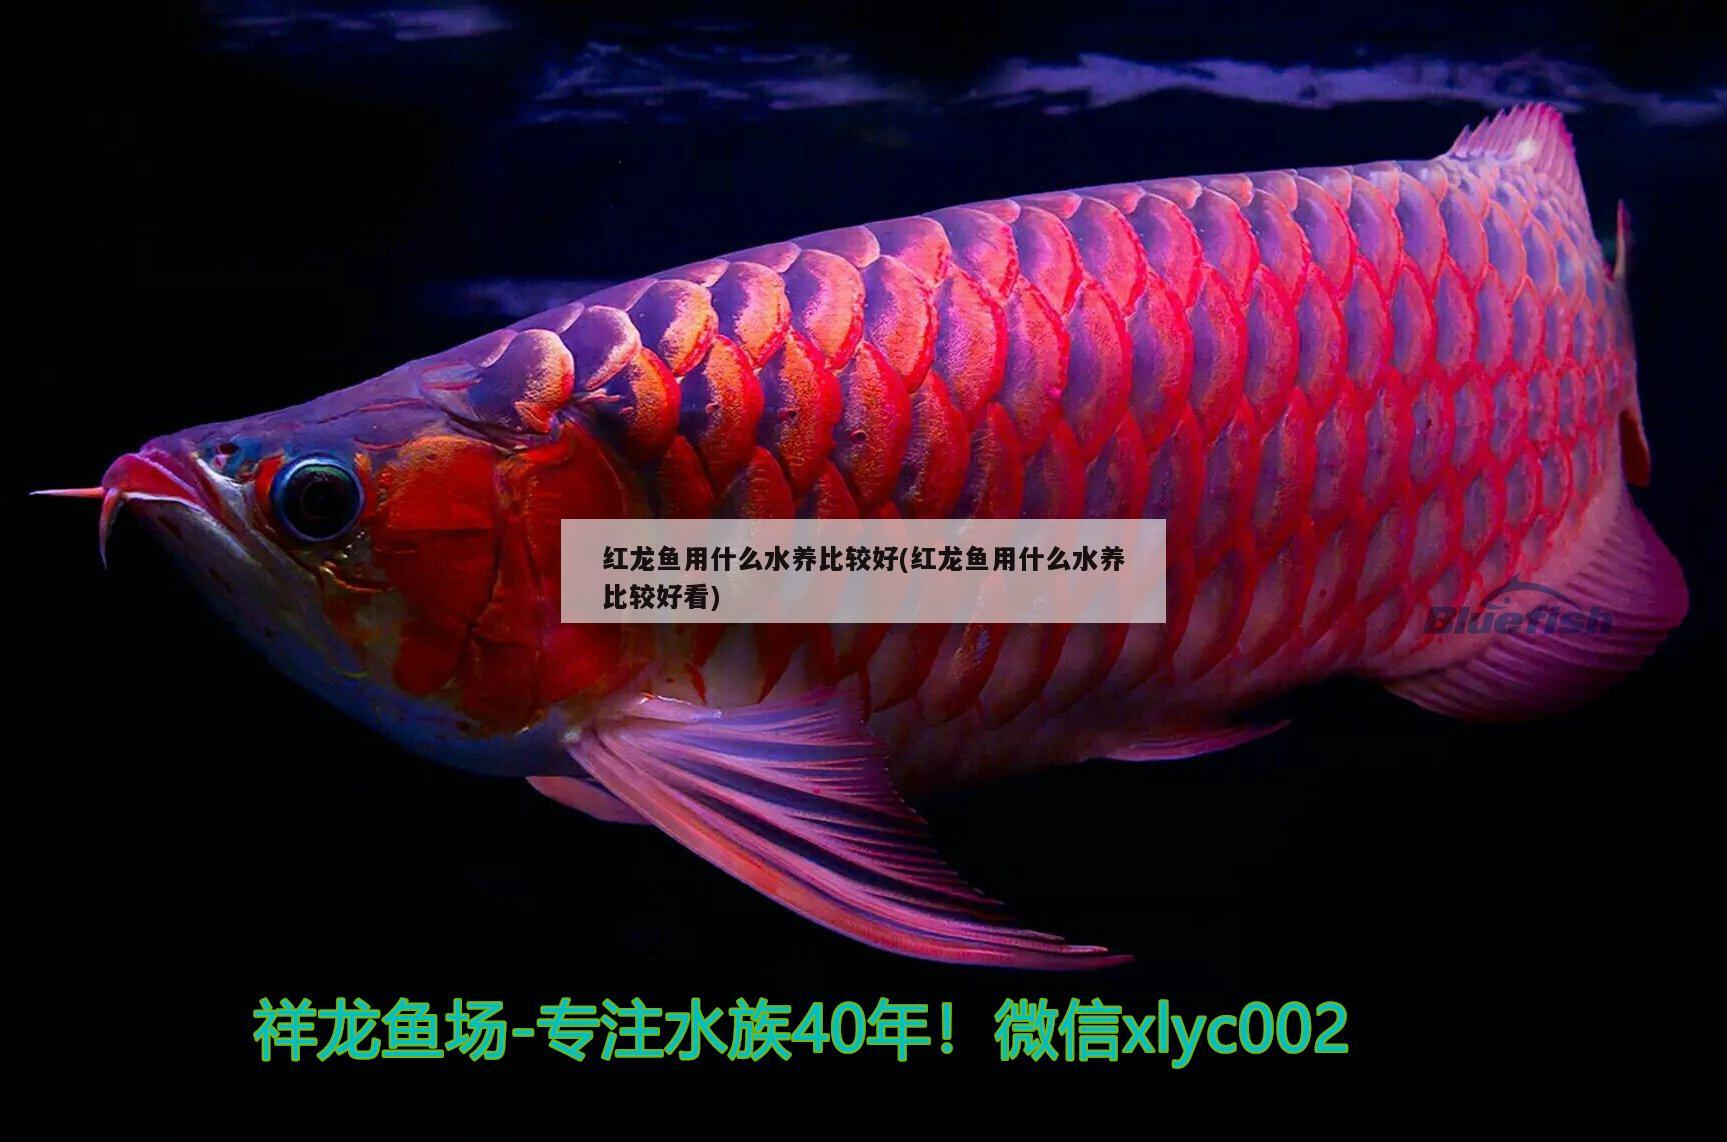 红龙鱼的品种图片及名称(红龙鱼属于什么品种的鱼?)